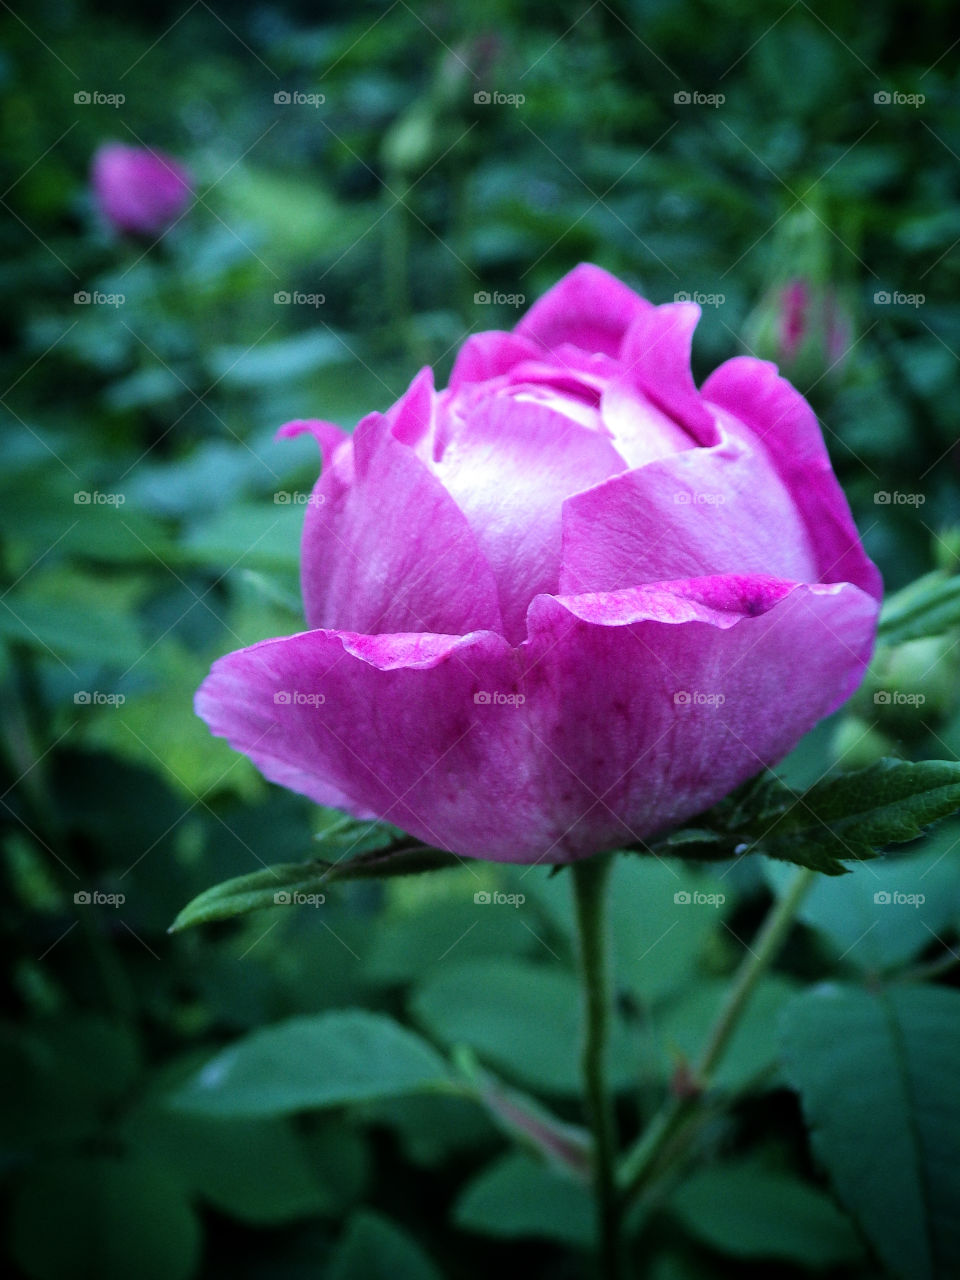 Pretty pink rose flower bud growing in the backyard flower garden